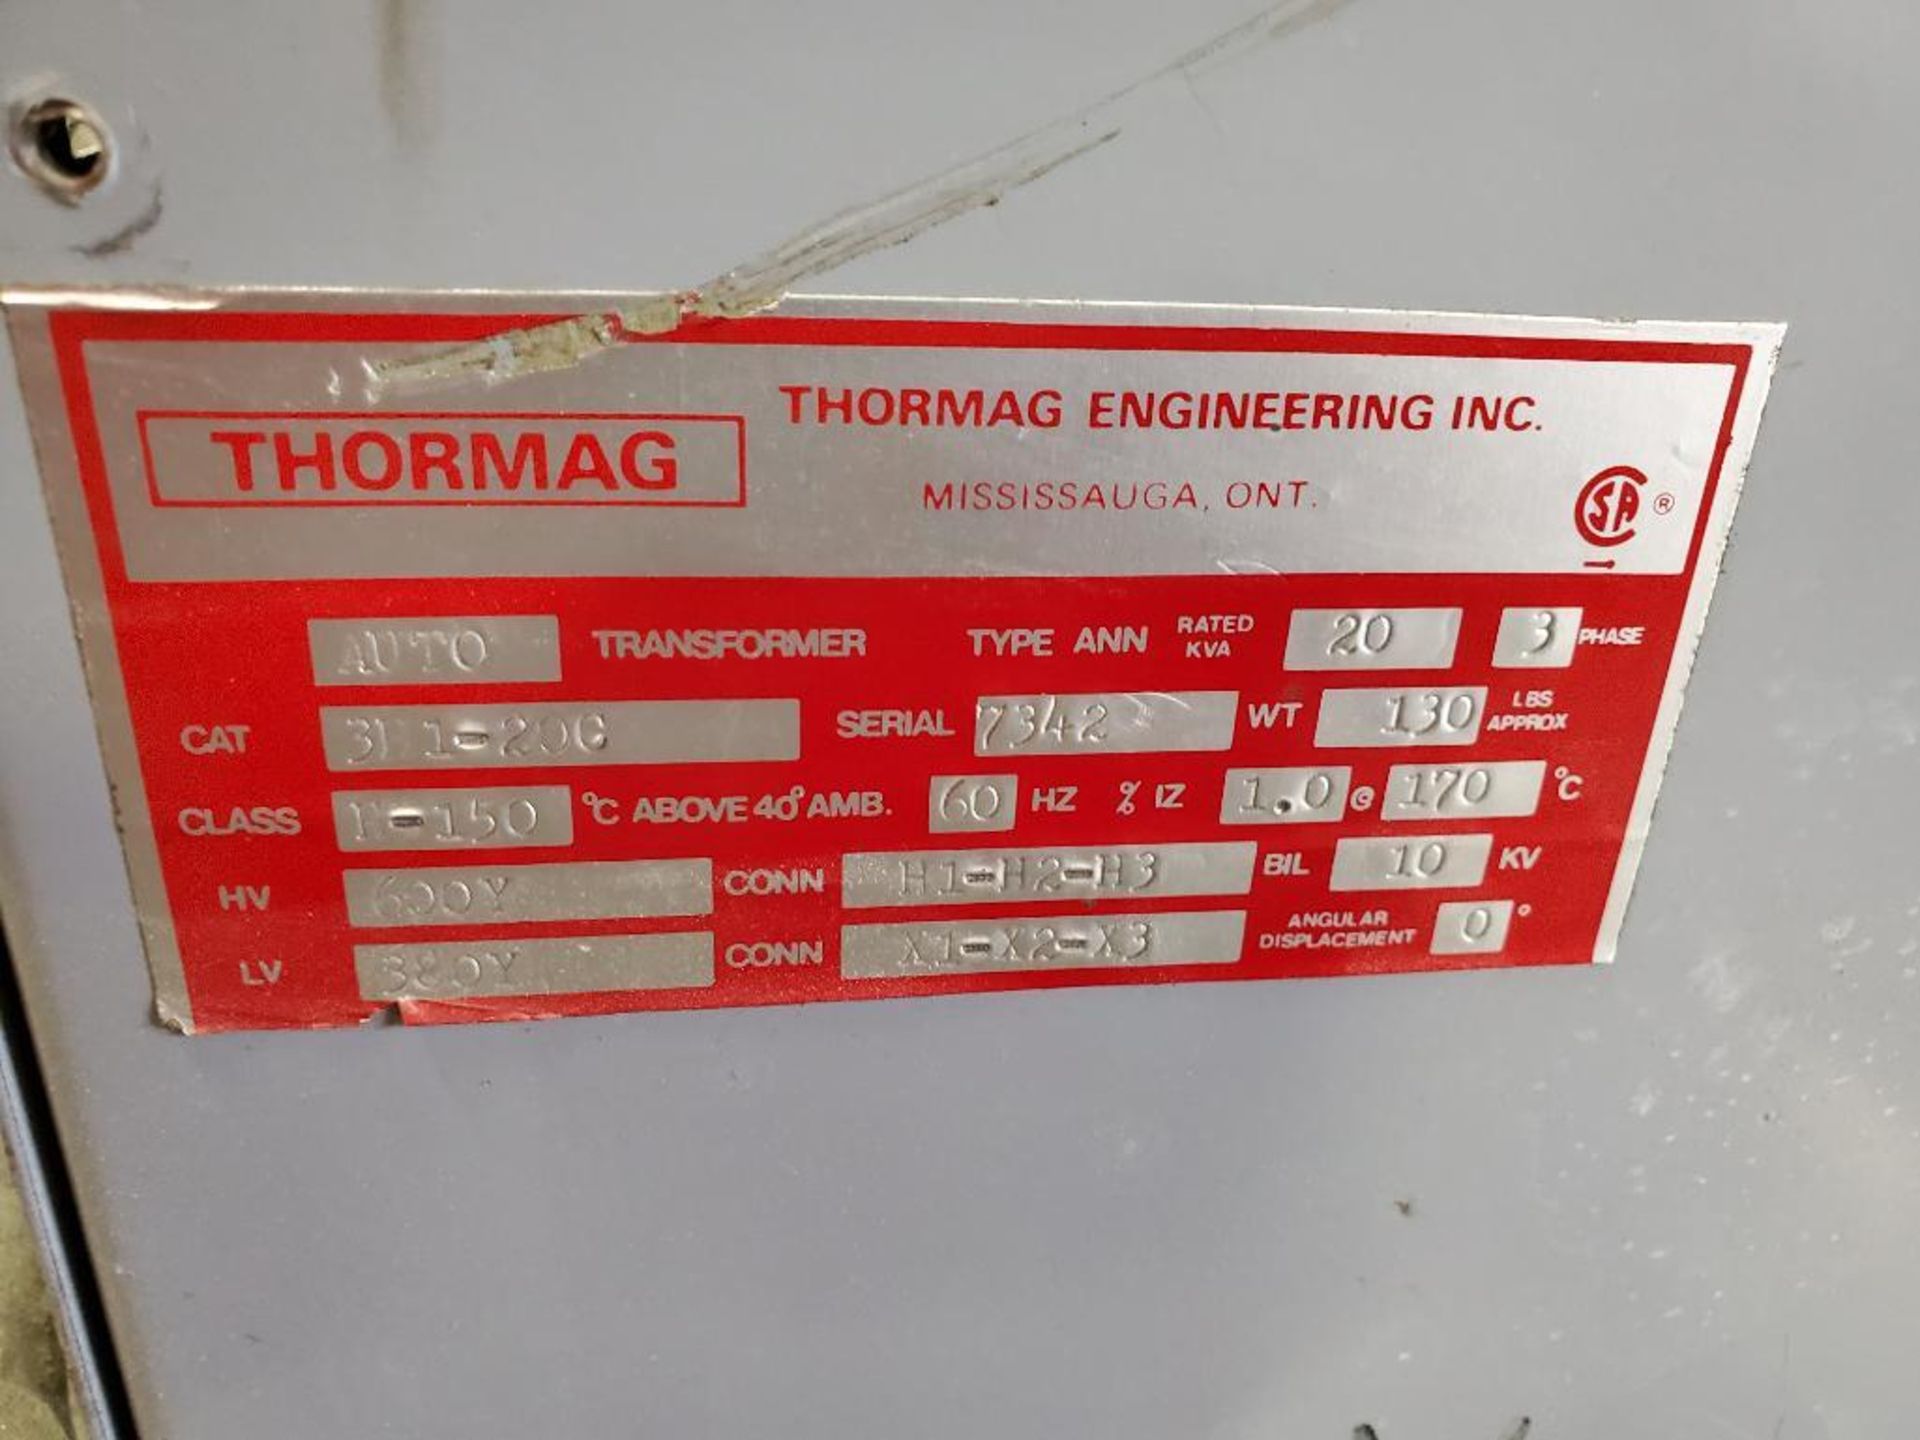 Thormag auto transformer. Catalog 311-20C. 600v primary, 380v secondary. - Image 2 of 6